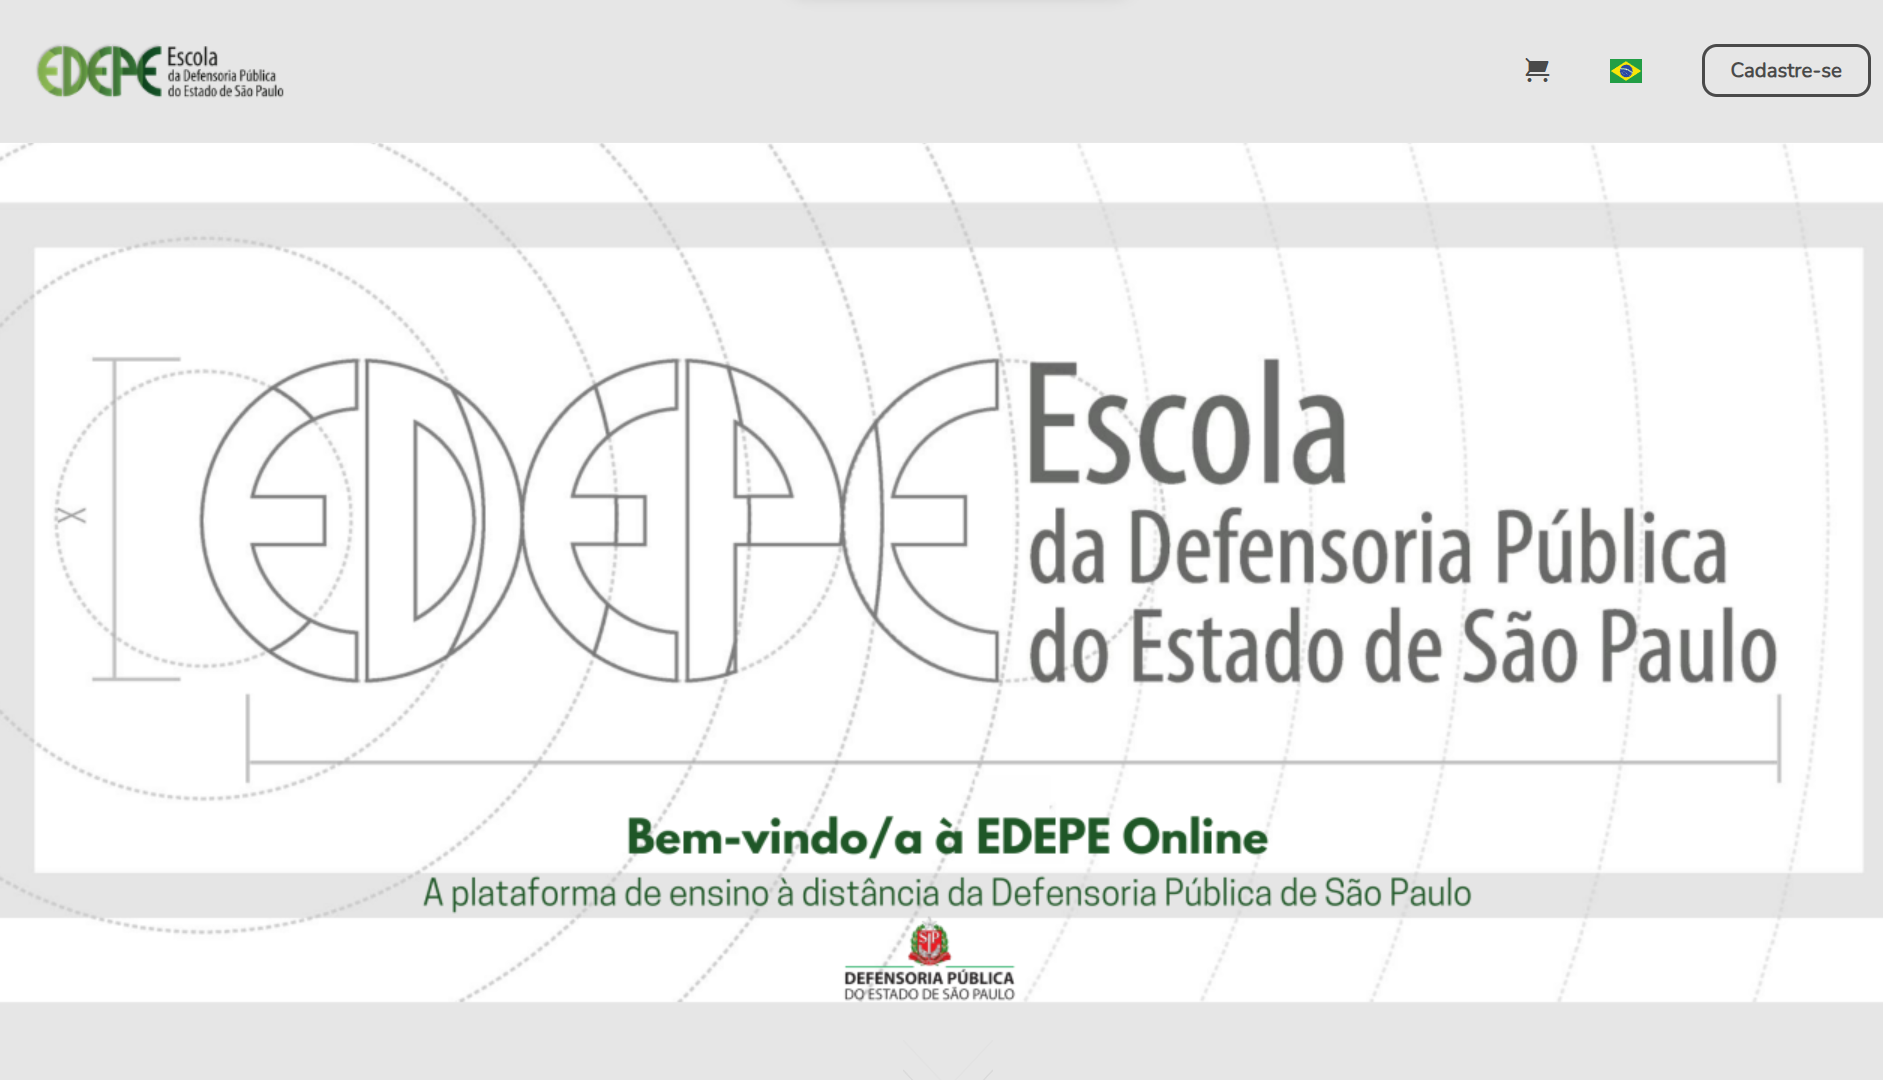 Reprodução da página de abertura da plataforma da Escola da Defensoria Pública do Estado de São Paulo. Contém os dizeres: 'Bem-vindo à Edepe Online' e 'a plataforma de ensino à distância da Defensoria Pública de São Paulo'.